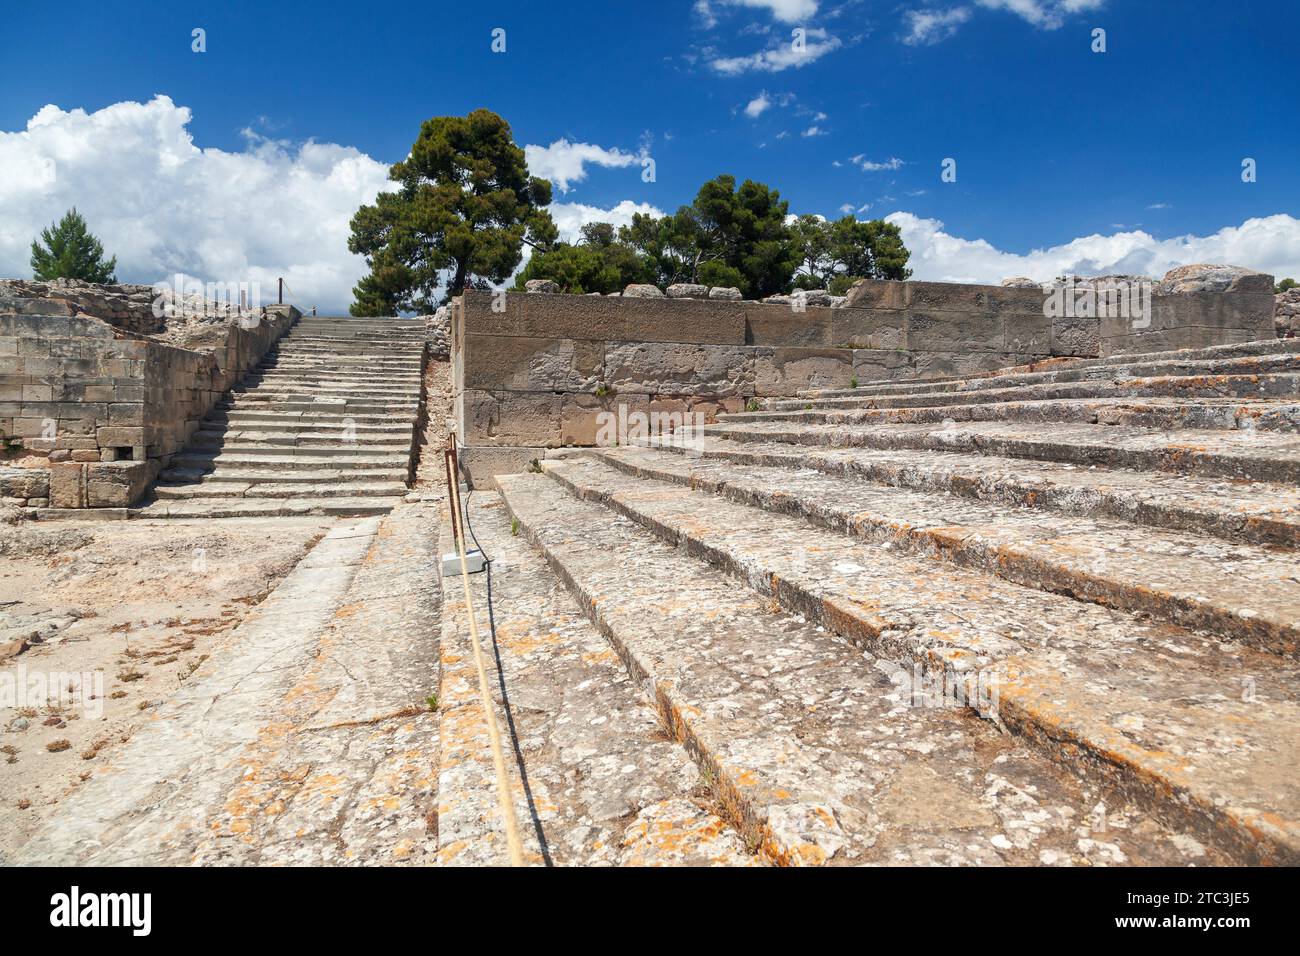 L'antica città minoica di Festos (o Faistos) a Creta, in Grecia, un importantissimo insediamento dell'età del bronzo, notevole per i resti del palazzo minoico Foto Stock